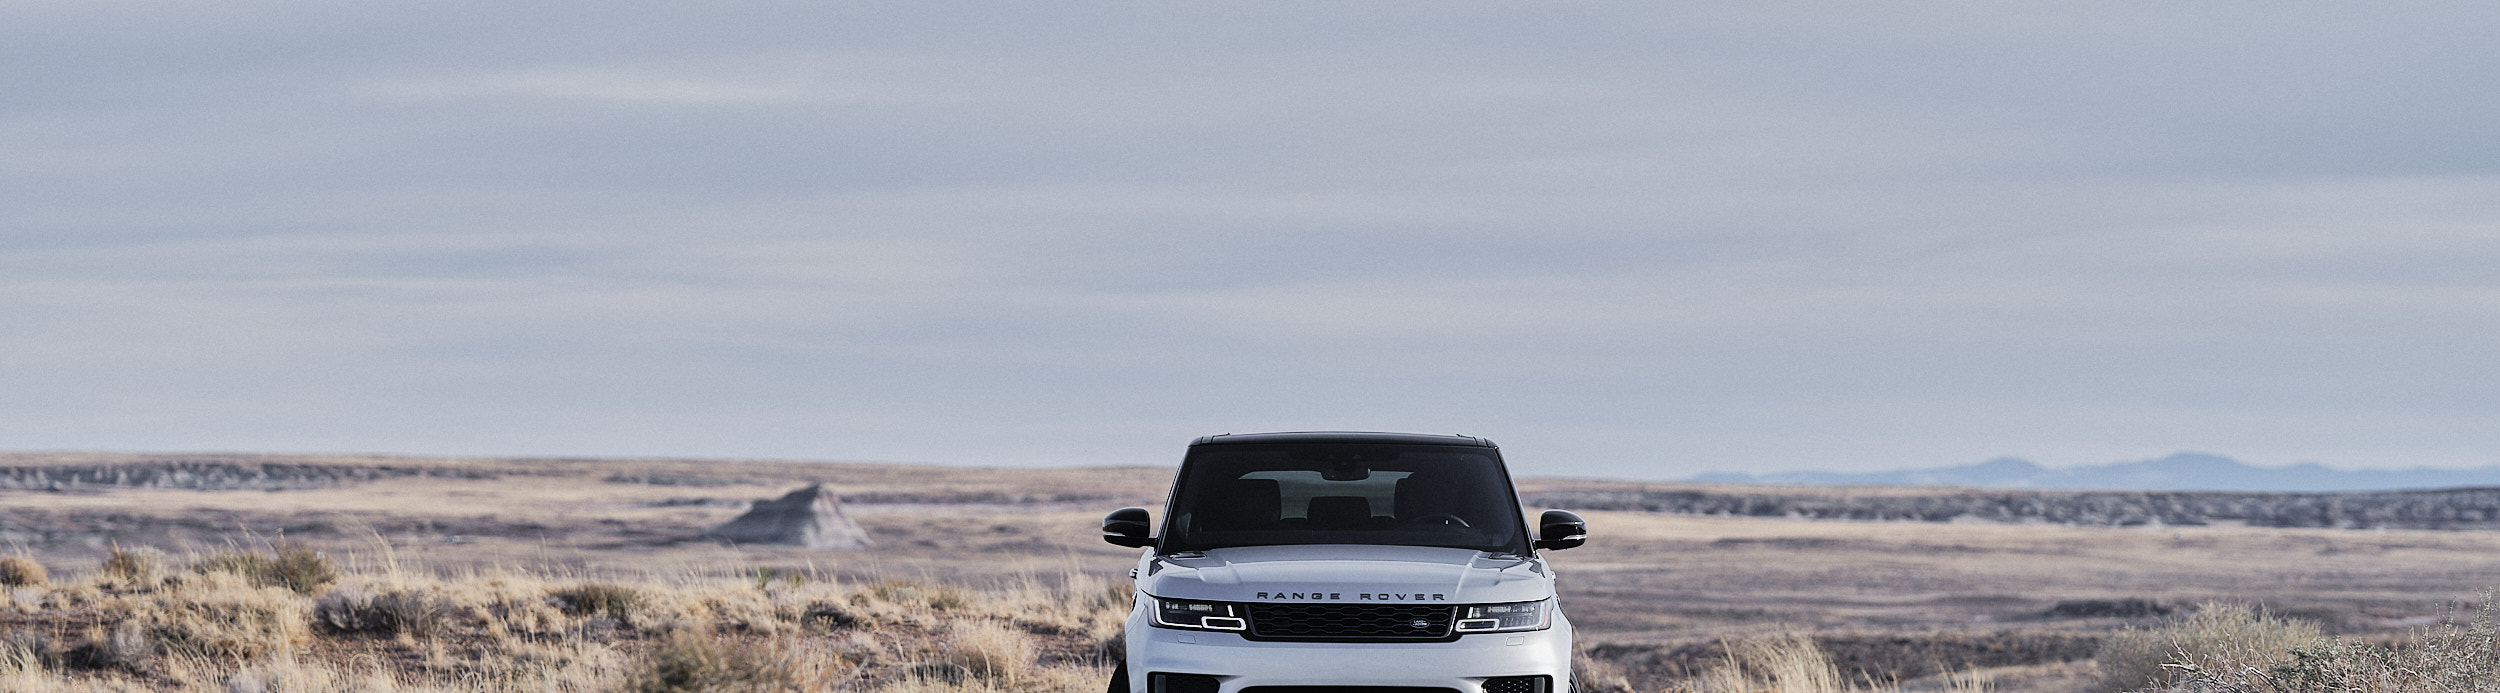 Land Rover USA - Range Rover Sport